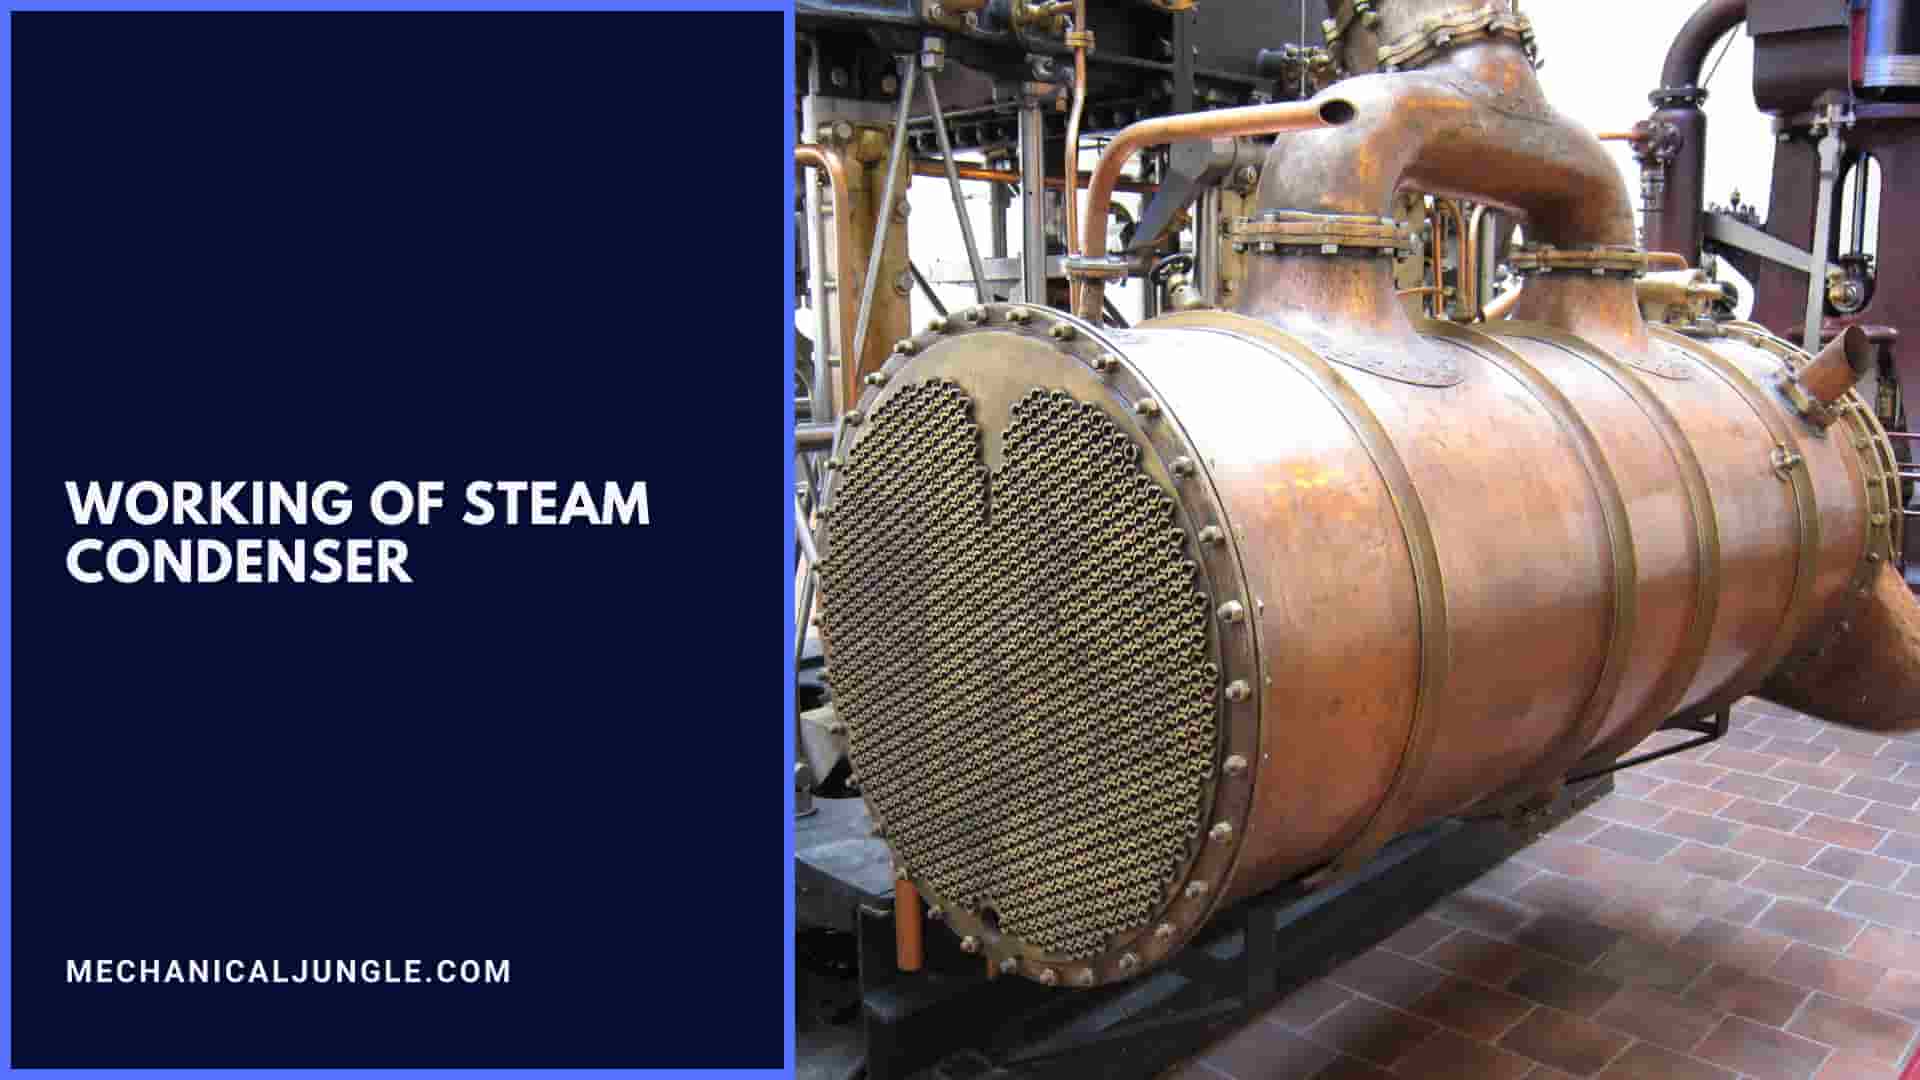 Working of Steam Condenser